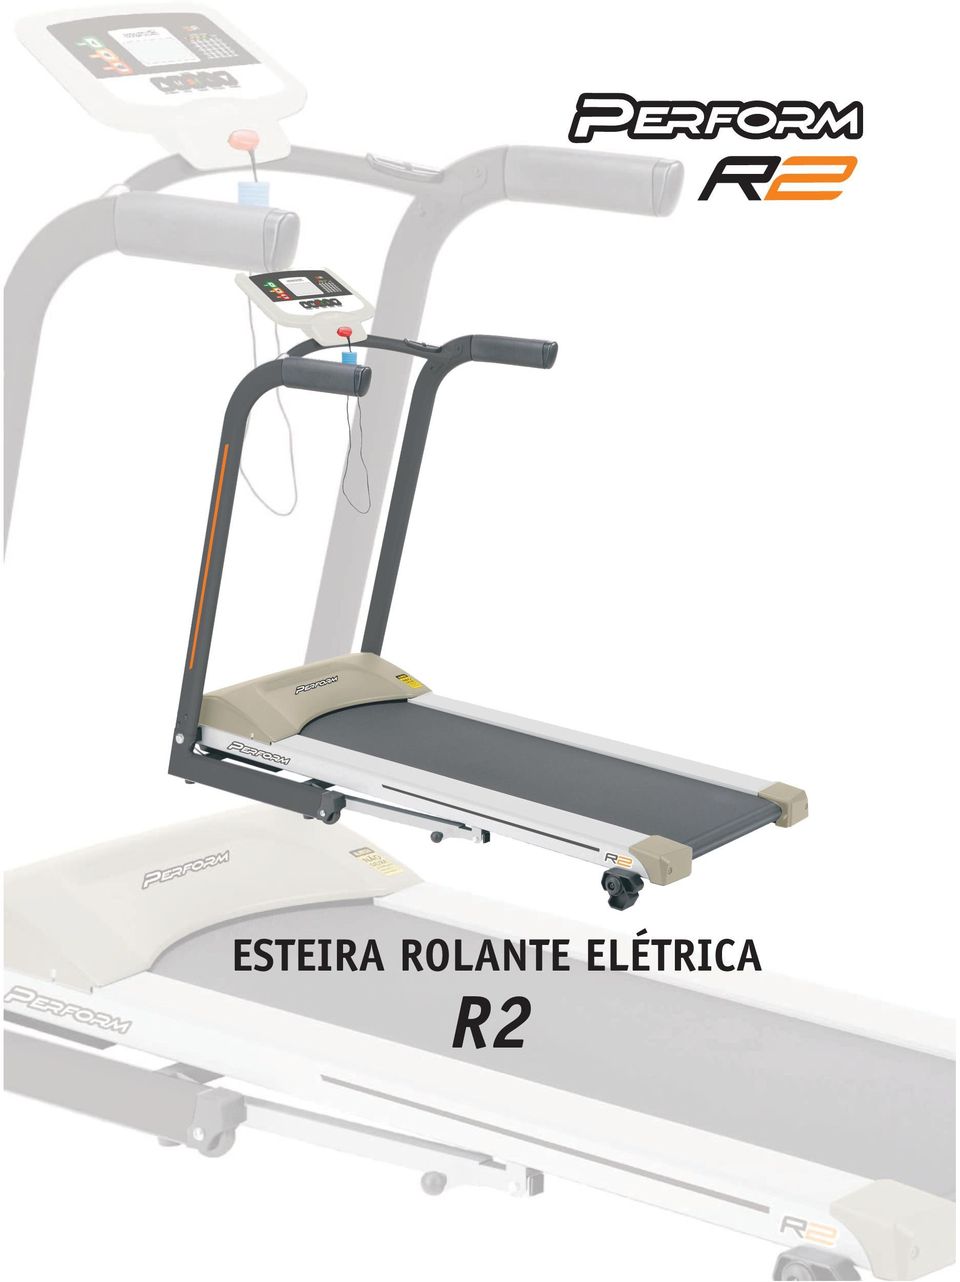 ESTEIRA ROLANTE ELÉTRICA R2 - PDF Free Download